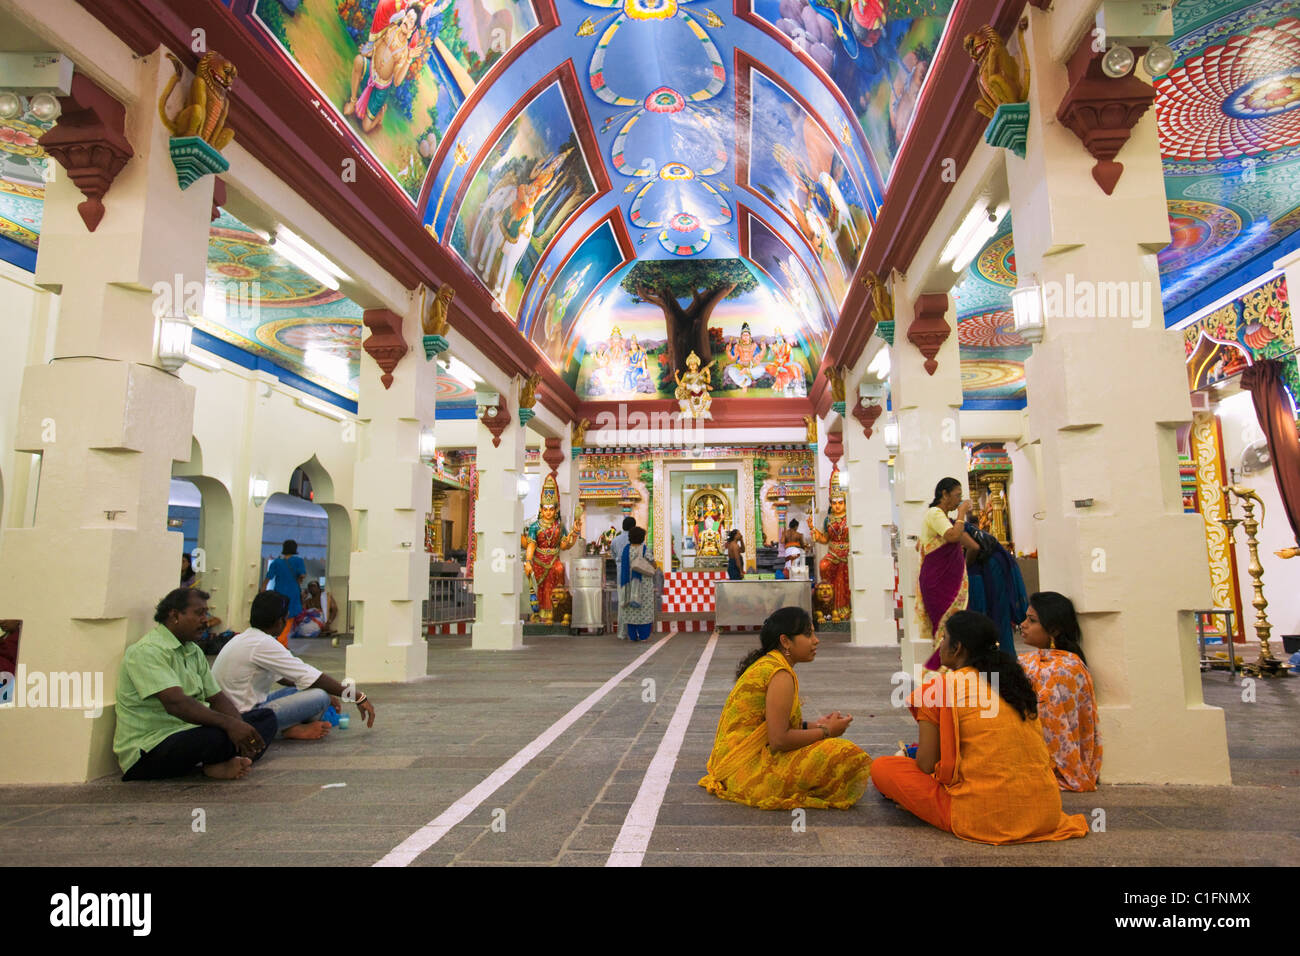 Farbenfrohe Einrichtung von den Sri Mariamman Hindu-Tempel.  Chinatown, Singapur Stockfoto